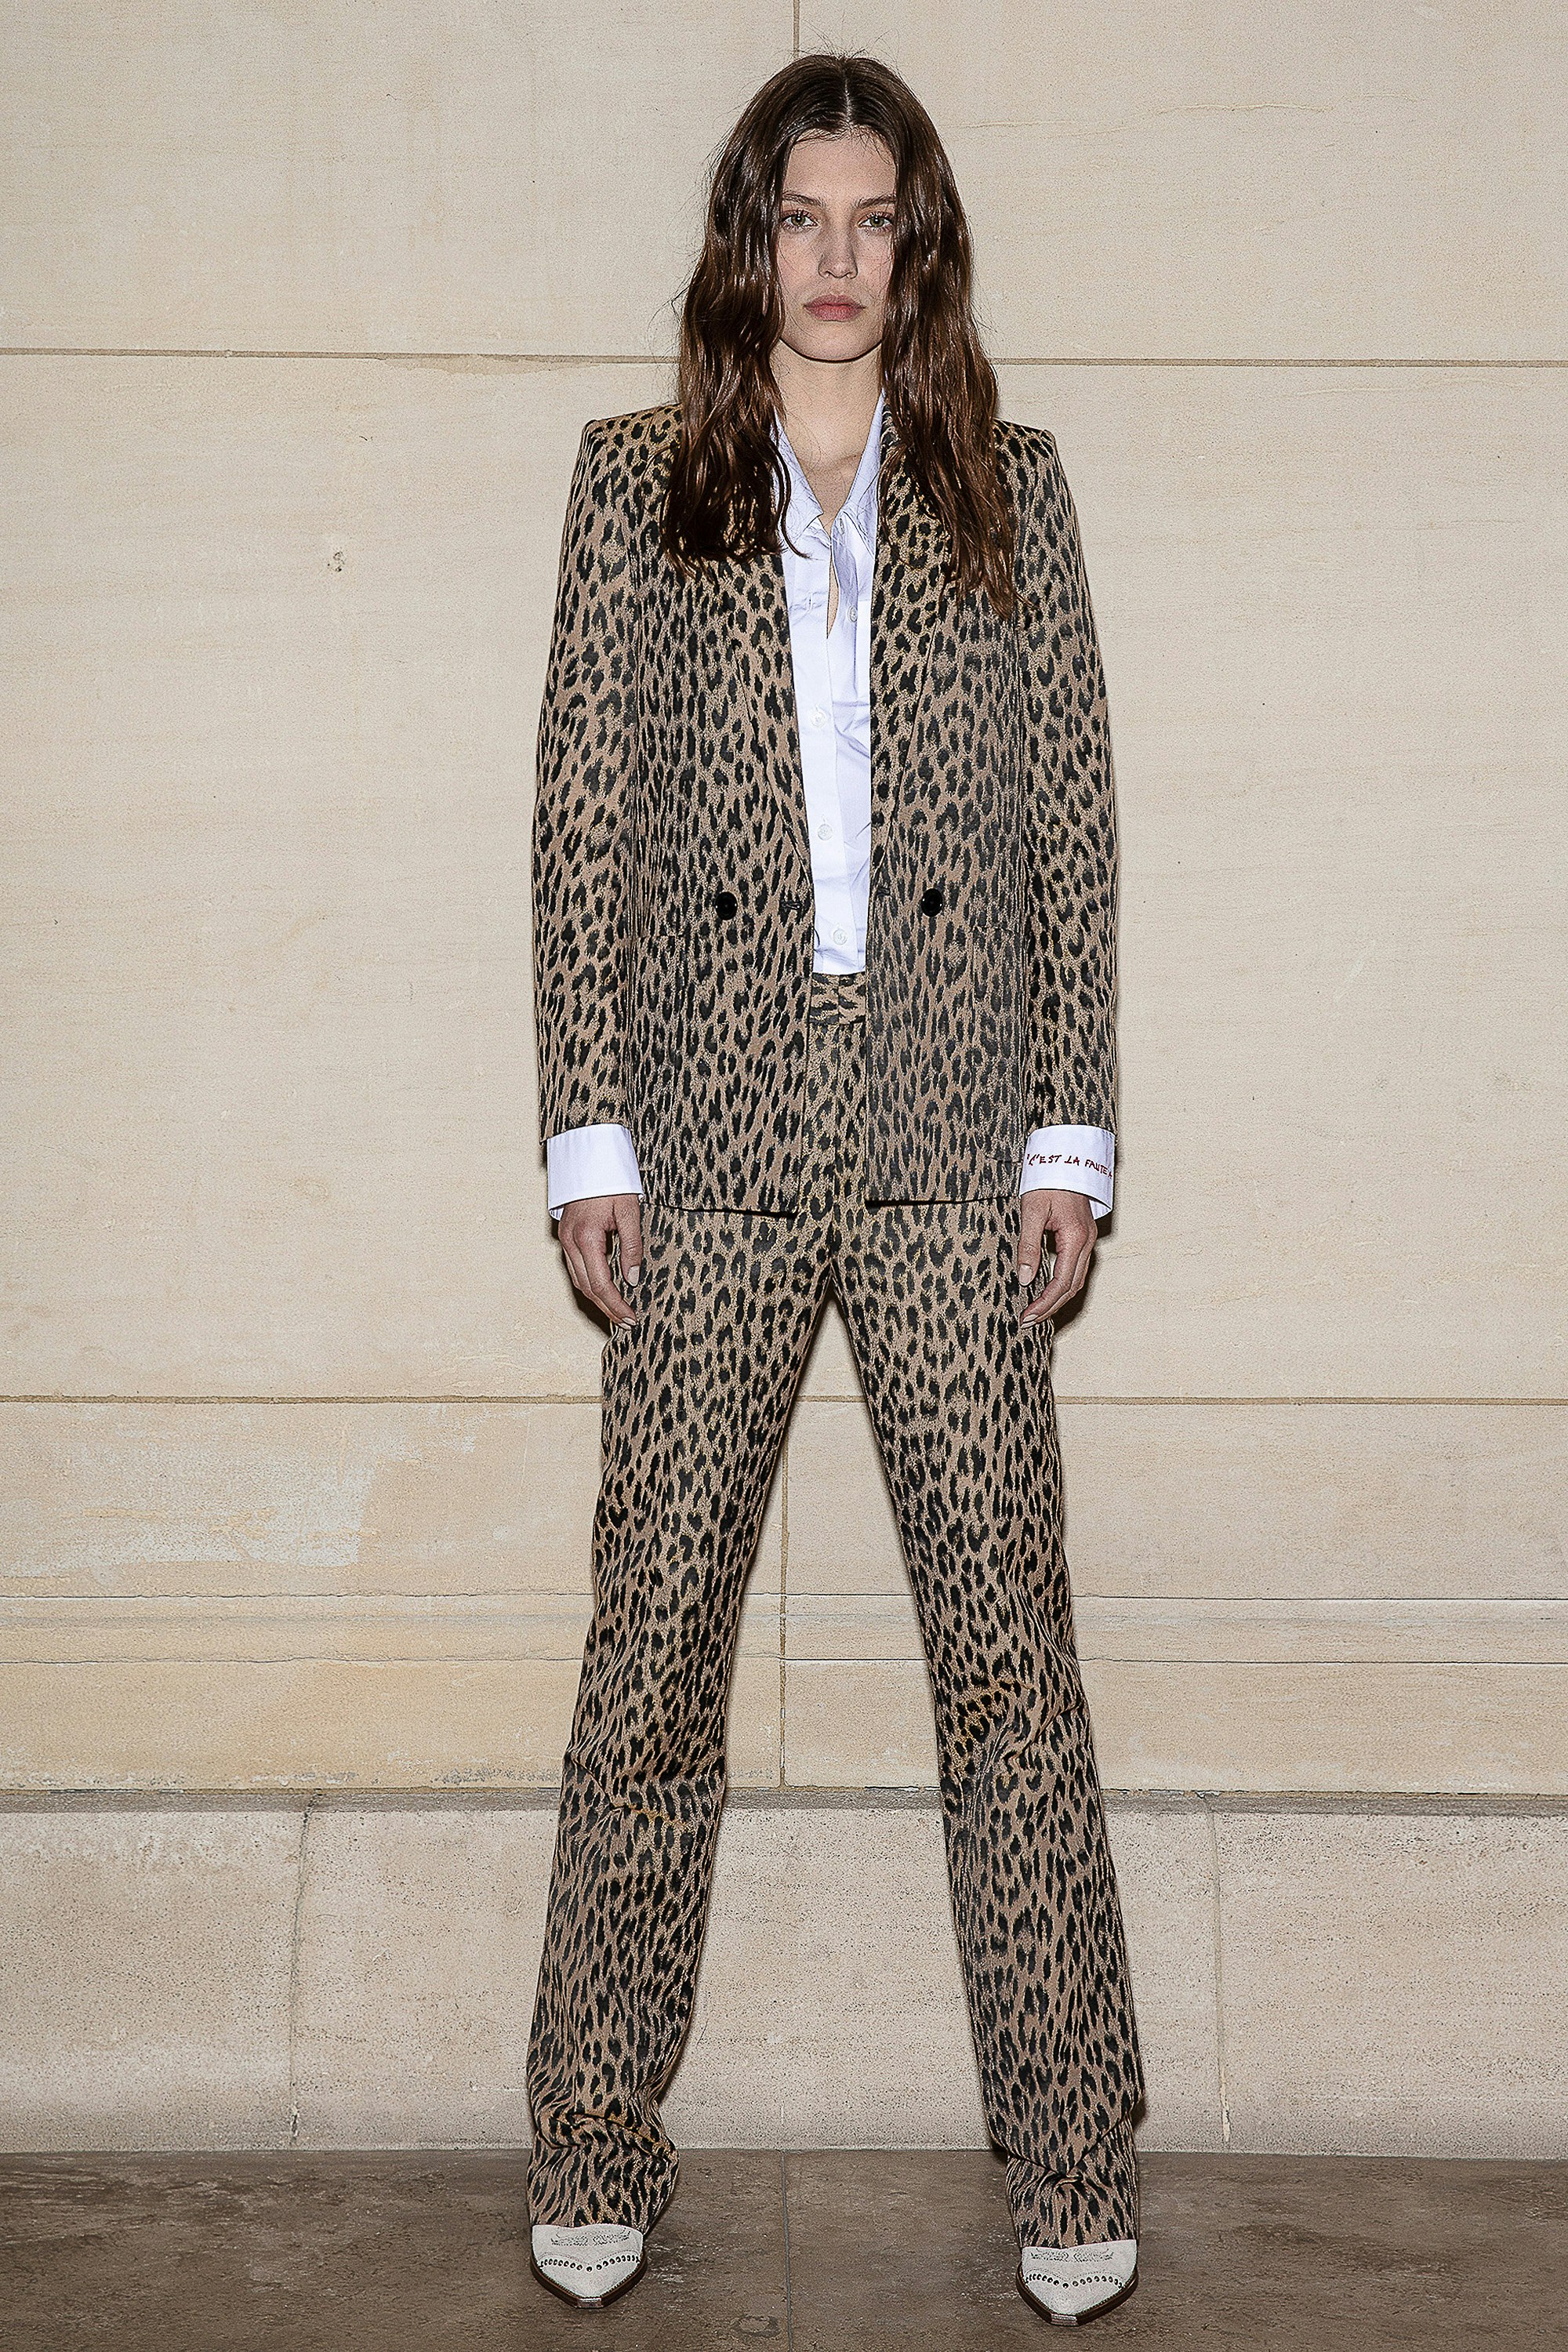 Pistol Leopard Trousers Women's beige trousers with leopard print